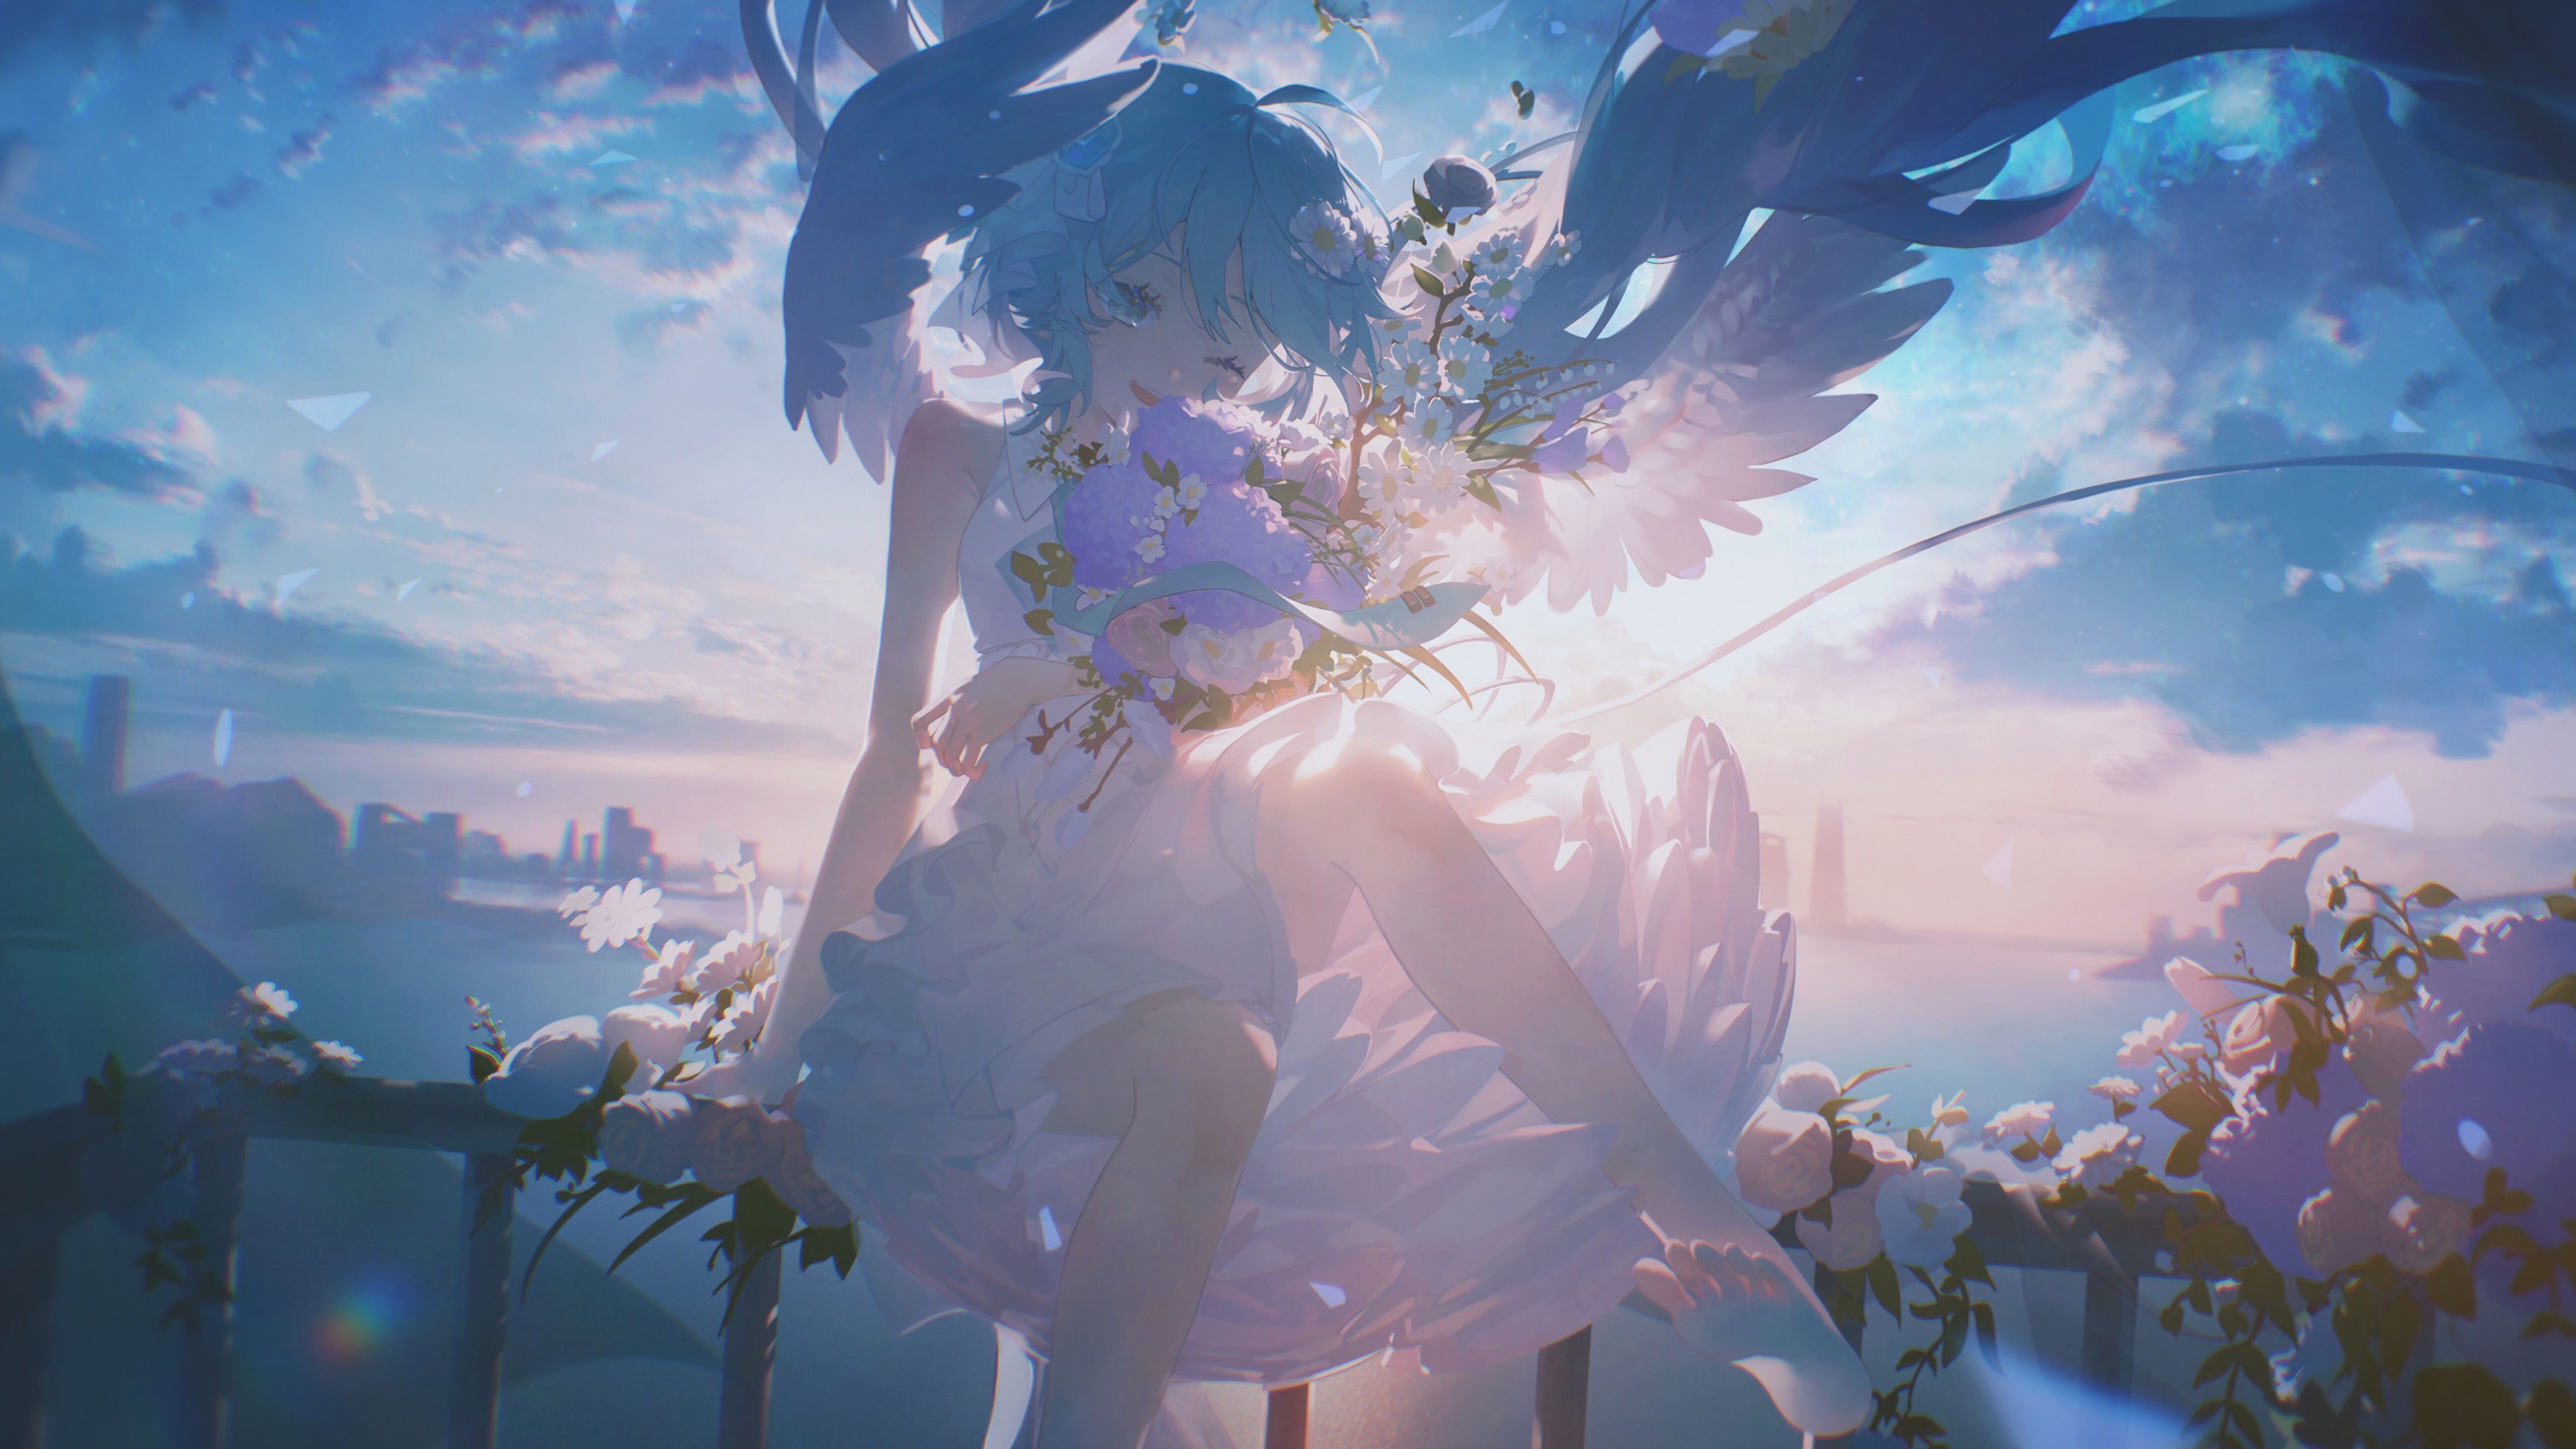 Anime Anime Girls Blue Hair Blue Eyes One Eye Closed Flowers Wings Angel Wings Flower In Hair 3840x2160